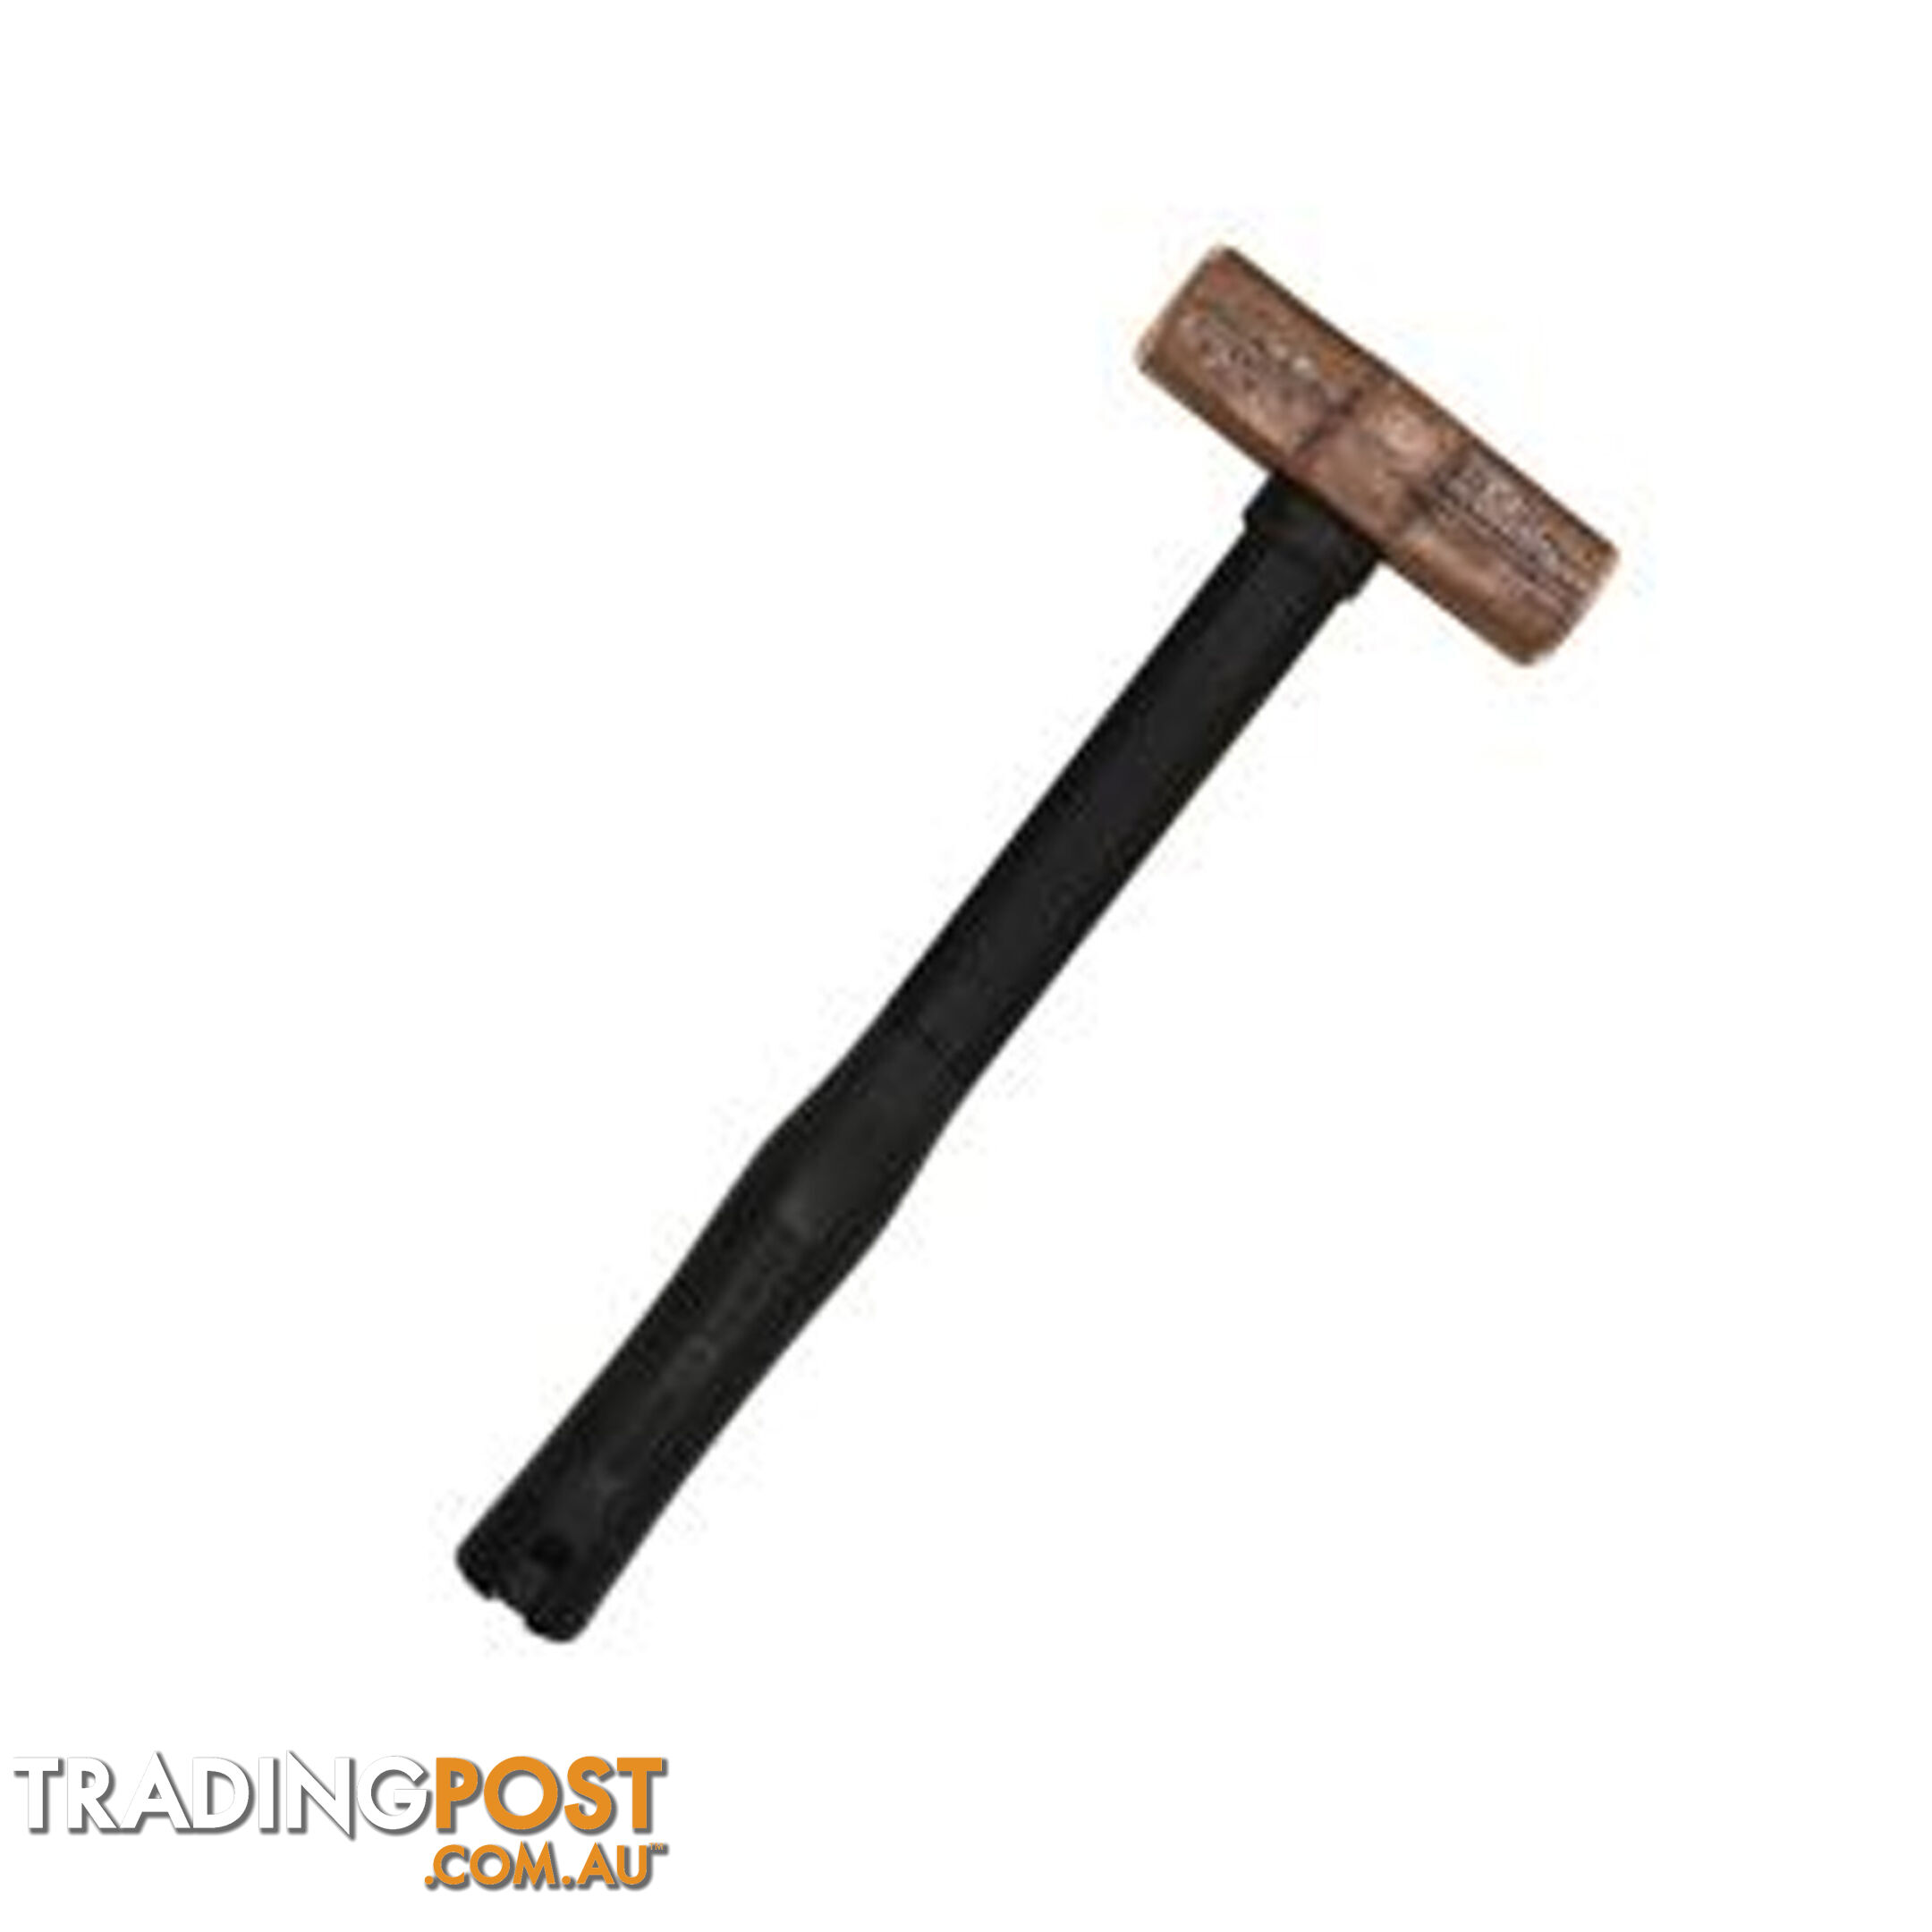 Mumme 10lb (4.53kg) Copper Hammer 900mm  Fibreglass Handle SKU - 5HCFRH10